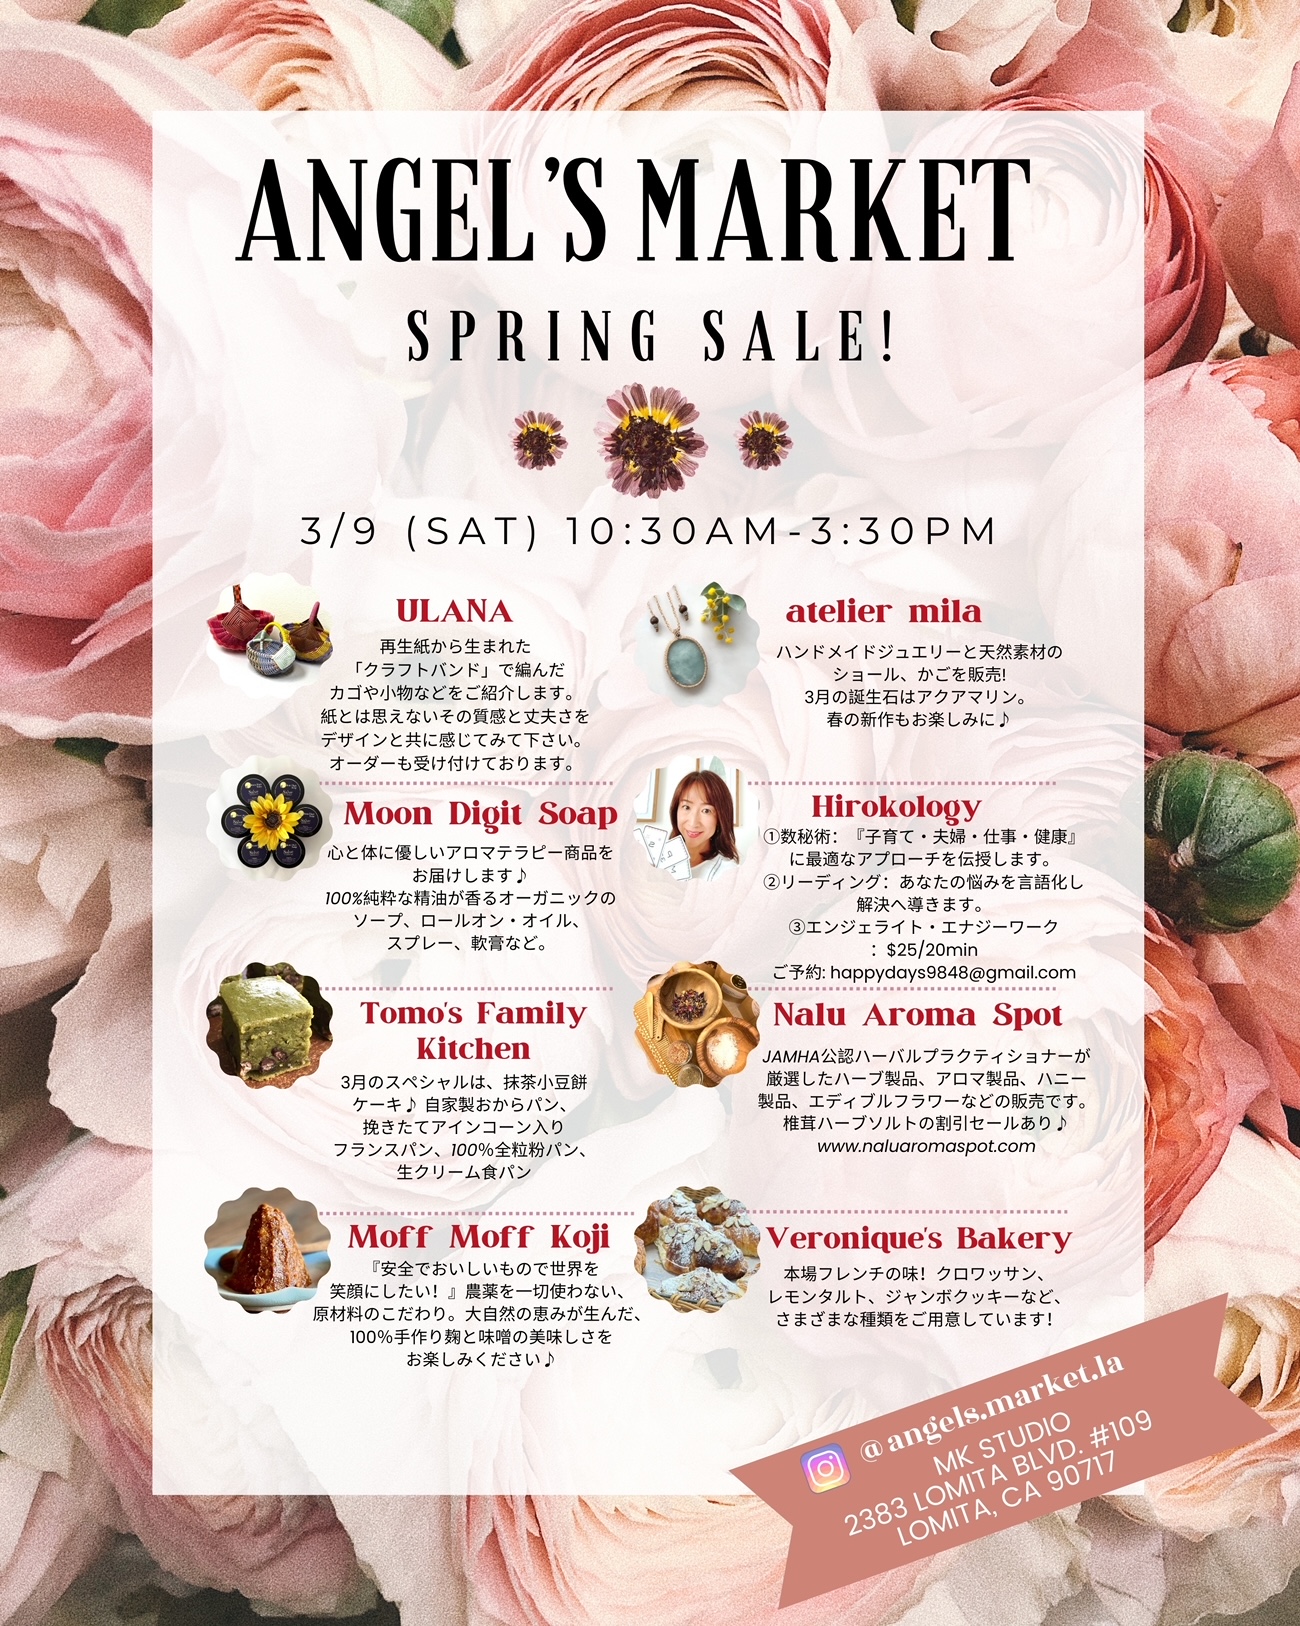 Angel's Market Spring Sale!